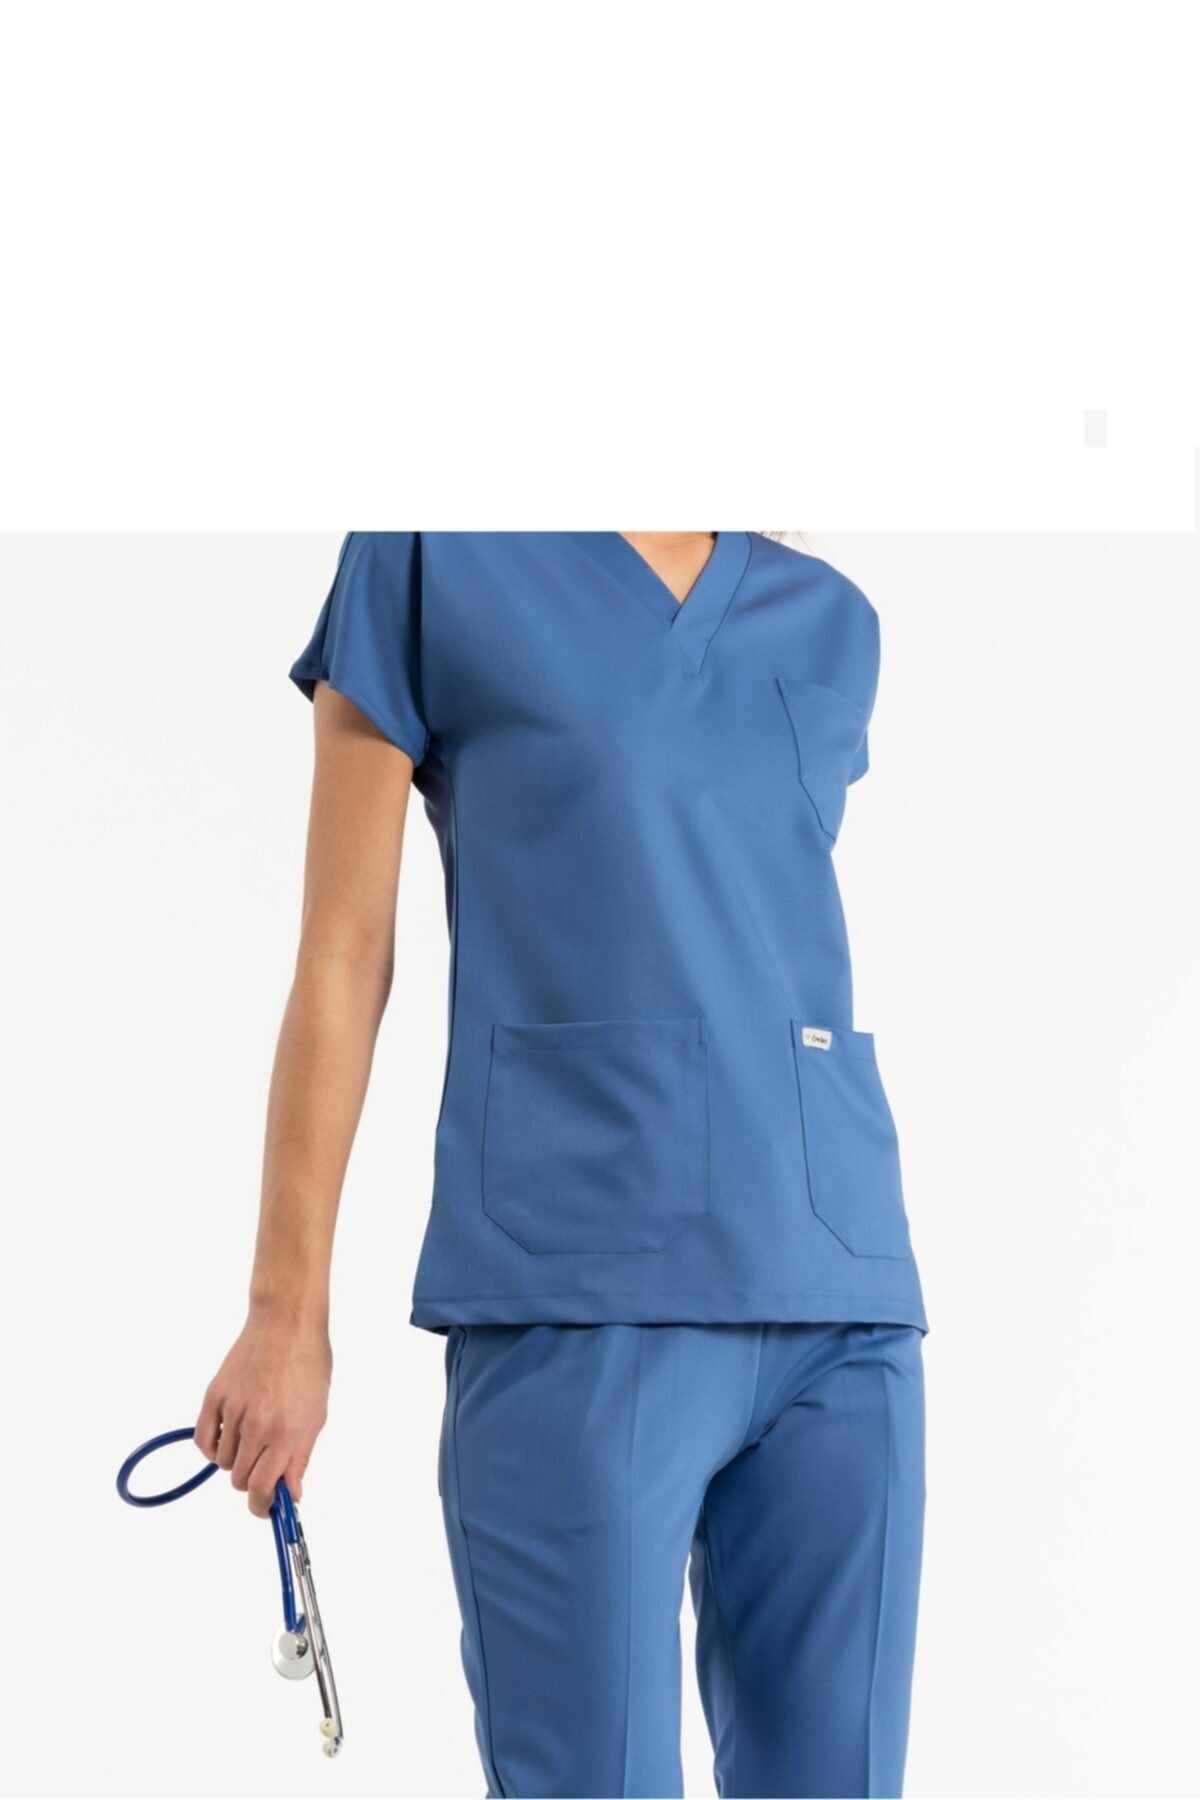 arslan iş elbiseleri Hastane Doktor Hemşire Nöbet Üniforma Takımı Bayan Petrol